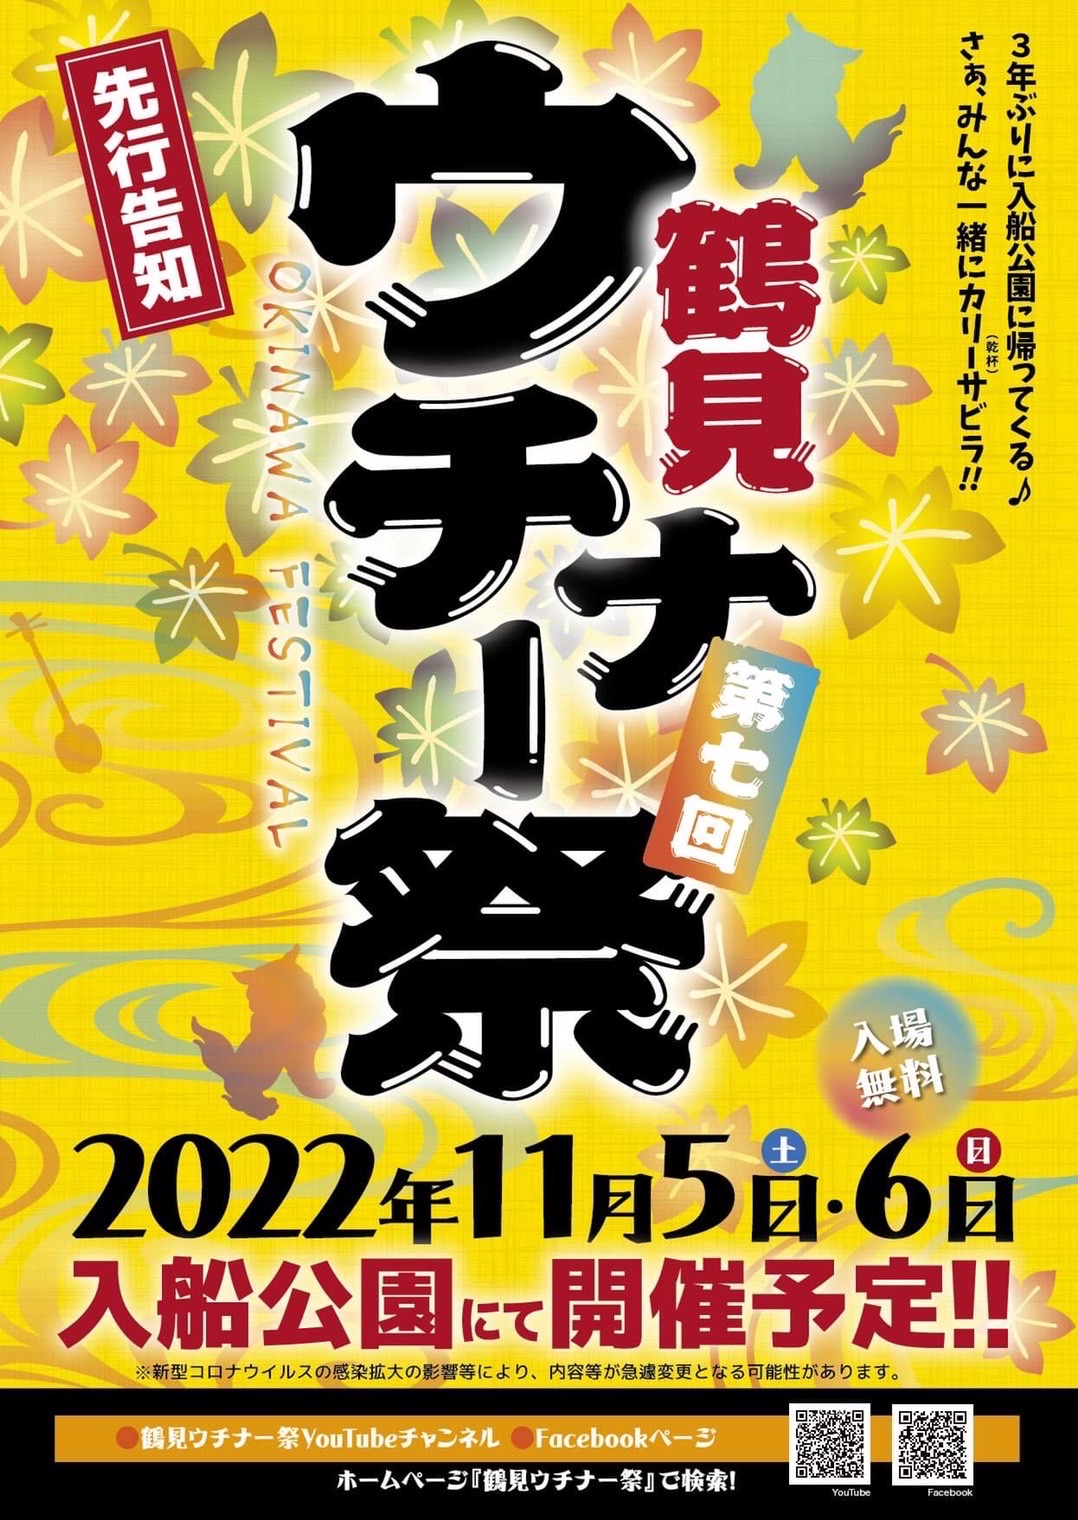 鶴見ウチナー祭2022　入船公園にて開催決定